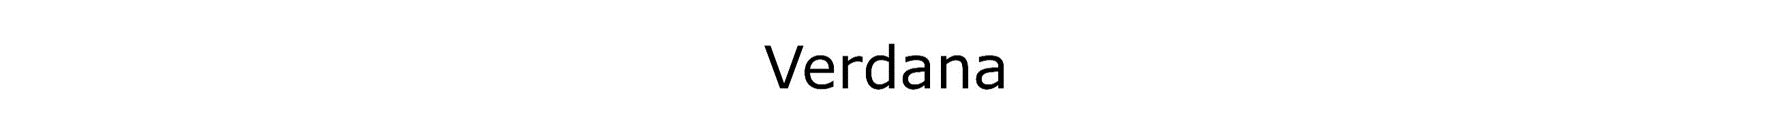 Verdana gần như là font chữ quá phổ biến và có sẵn trên 99,7% máy tính Windows và 98,05% máy Mac